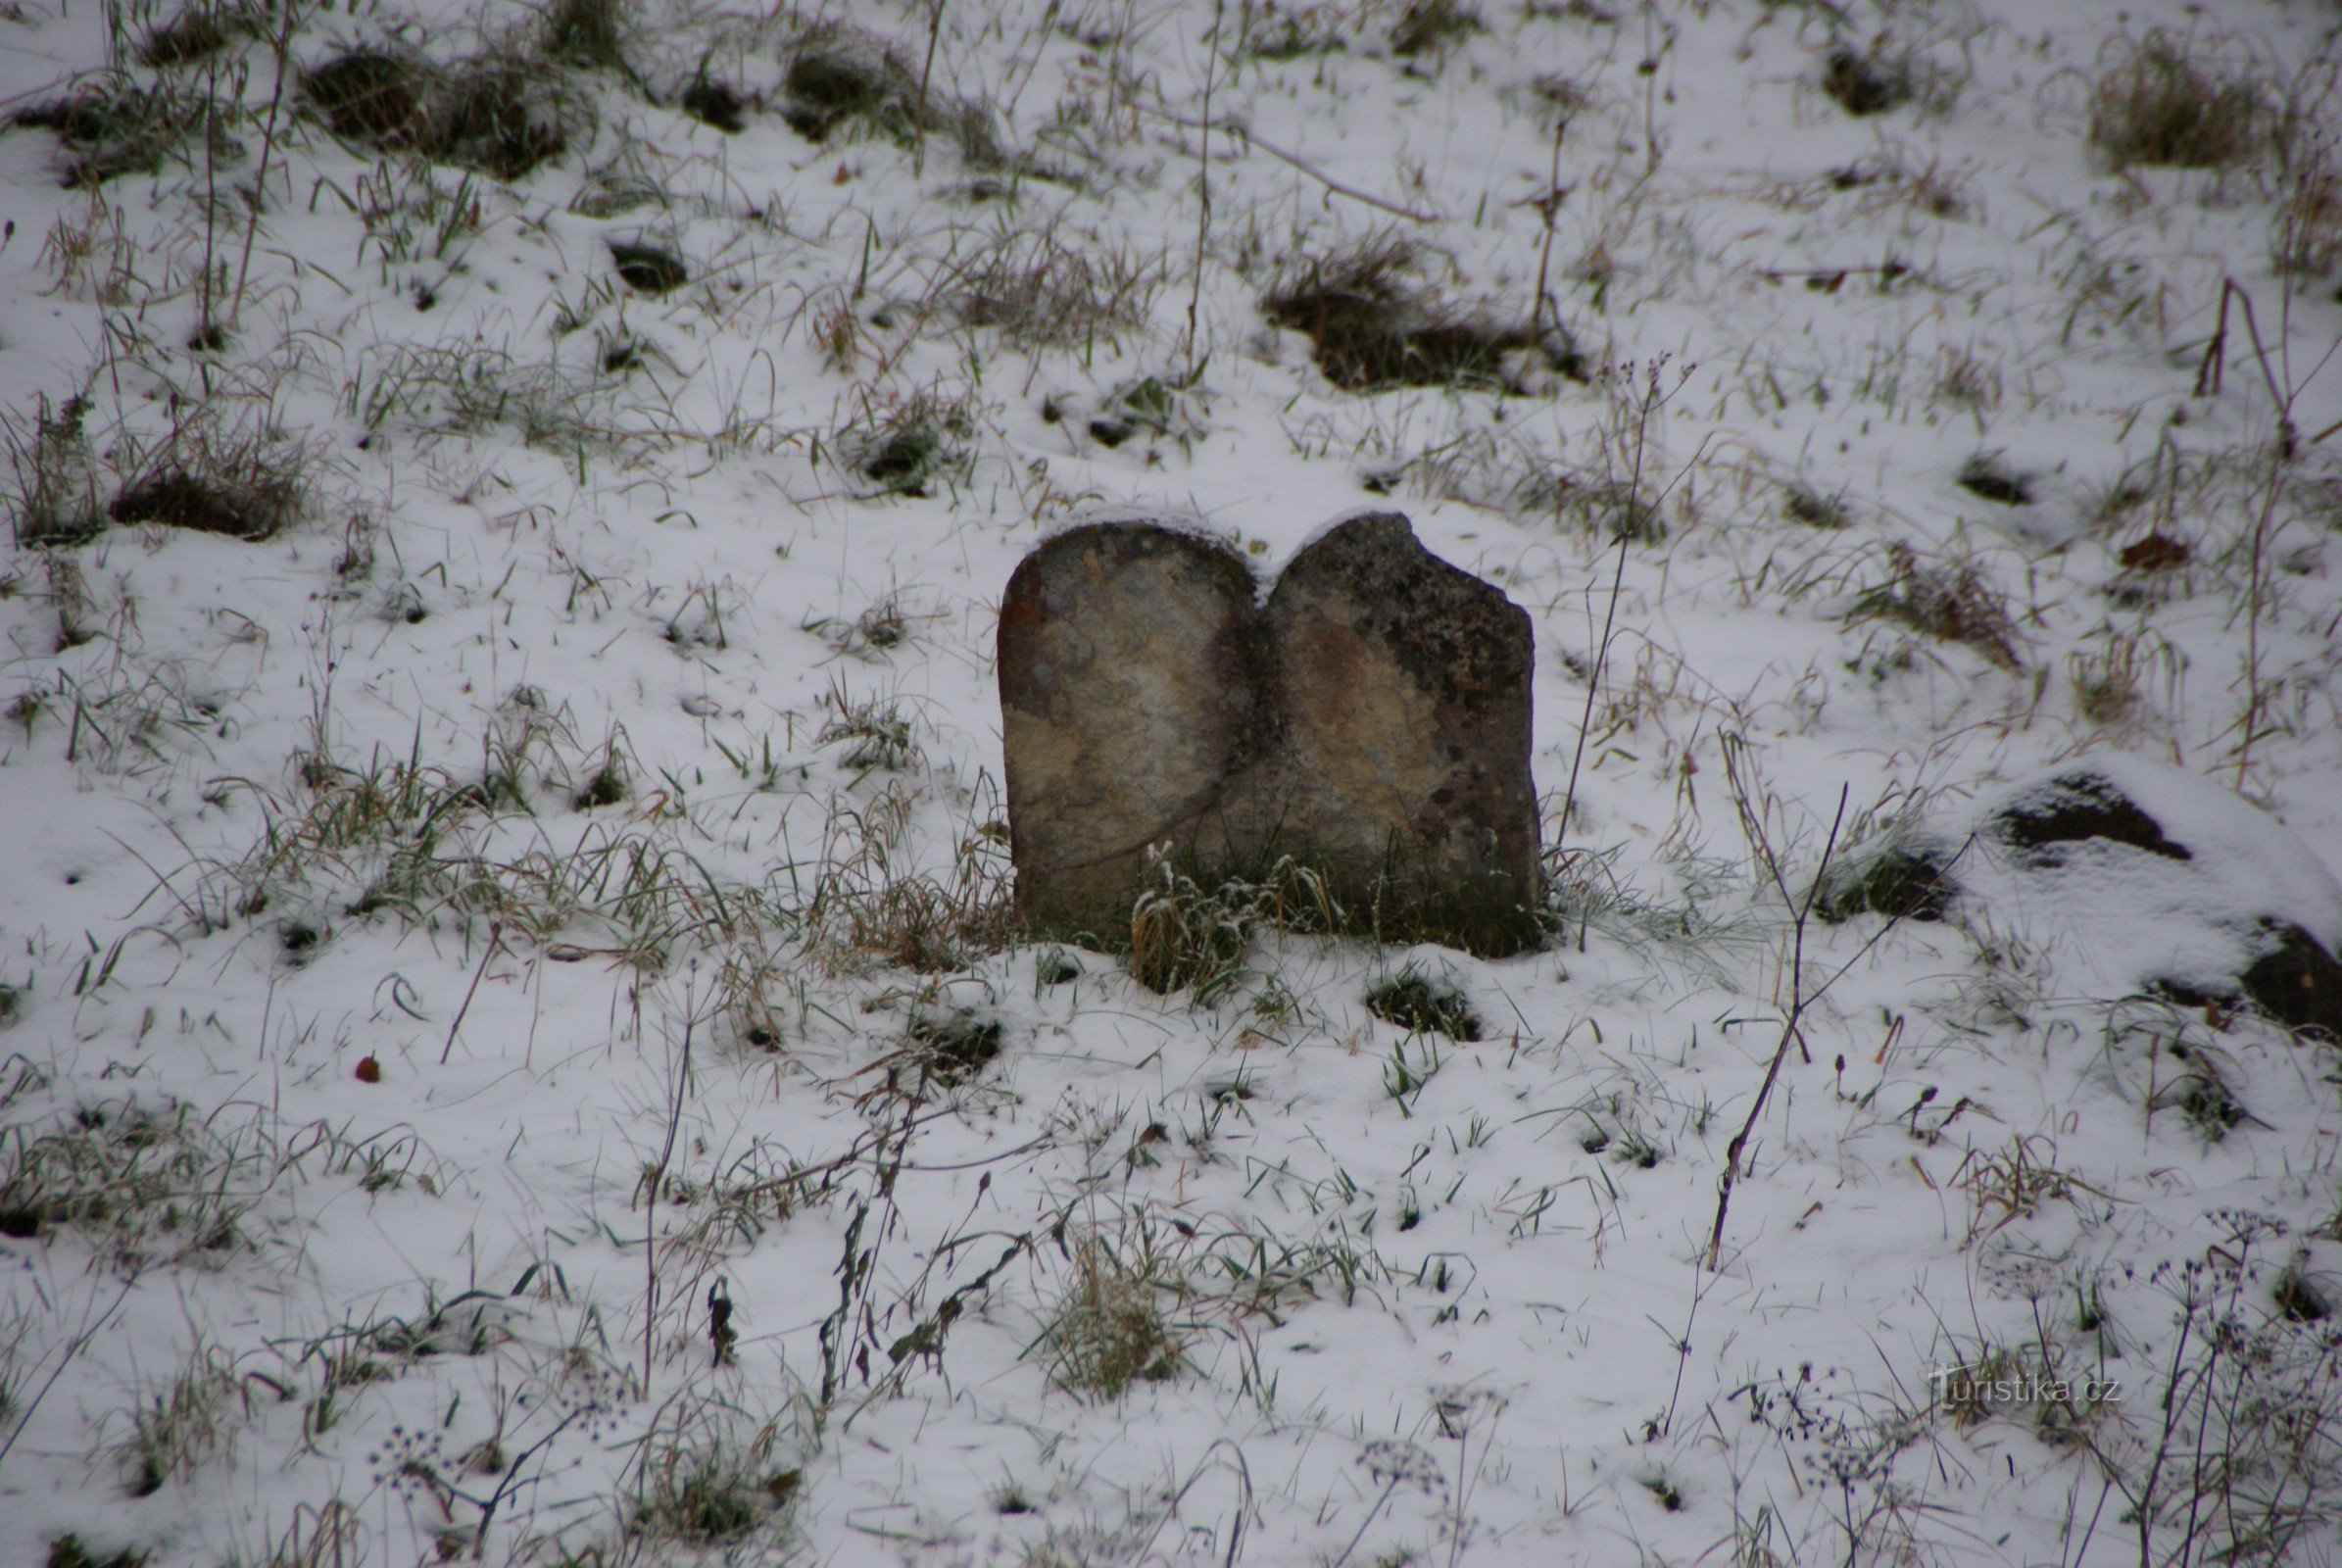 Boskovice - duyệt qua nghĩa trang Do Thái mùa đông